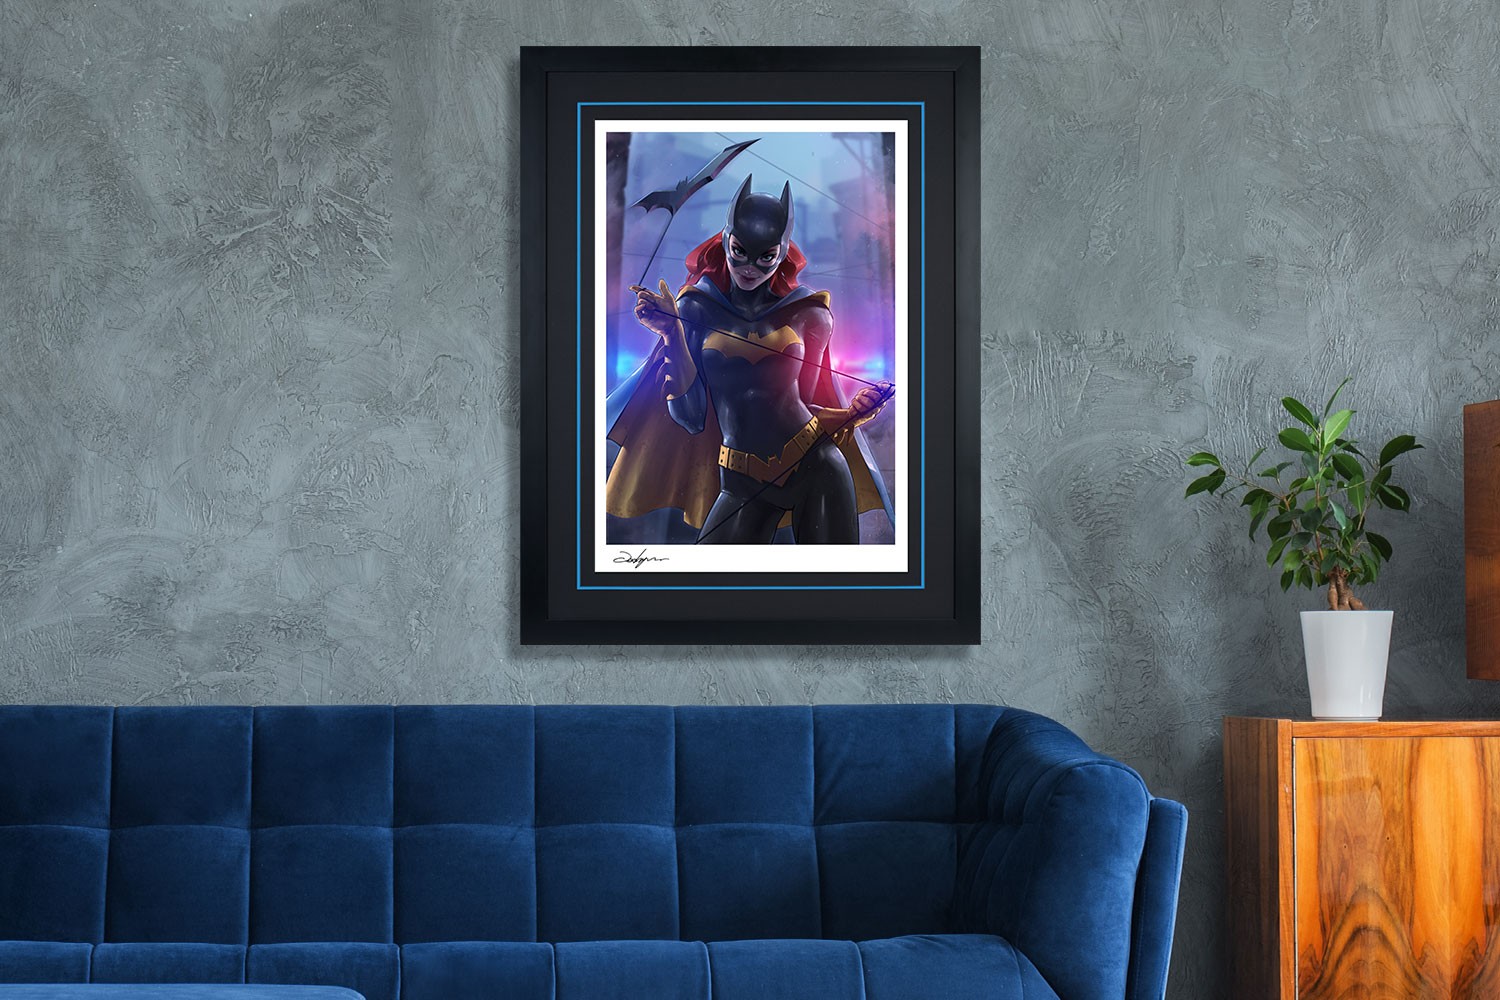 Batman Batgirl Roams Art: Canvas Prints, Frames & Posters